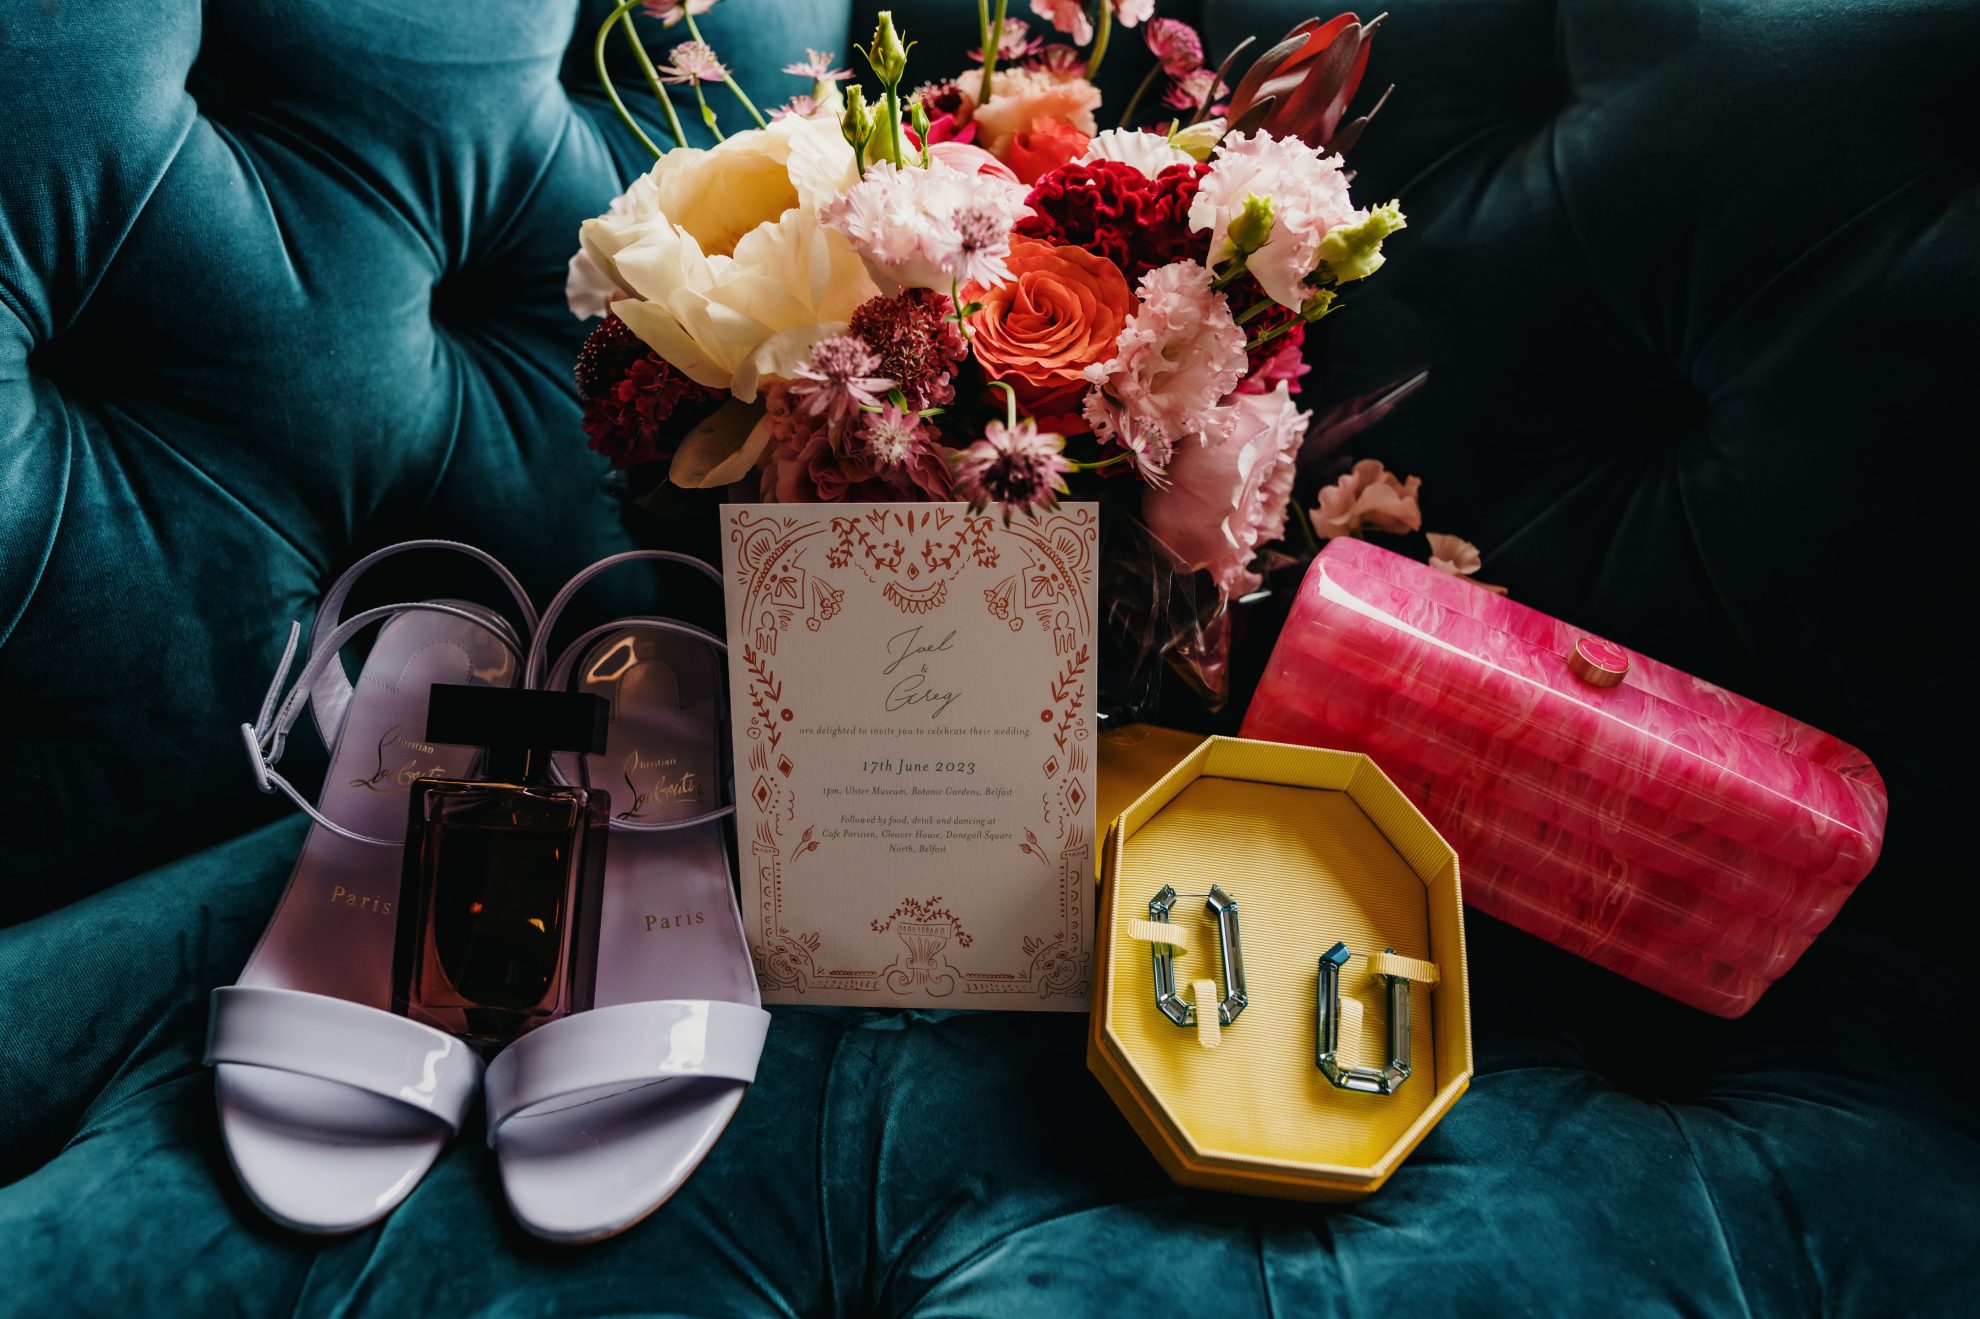 Jael wedding accessories on her wedding day